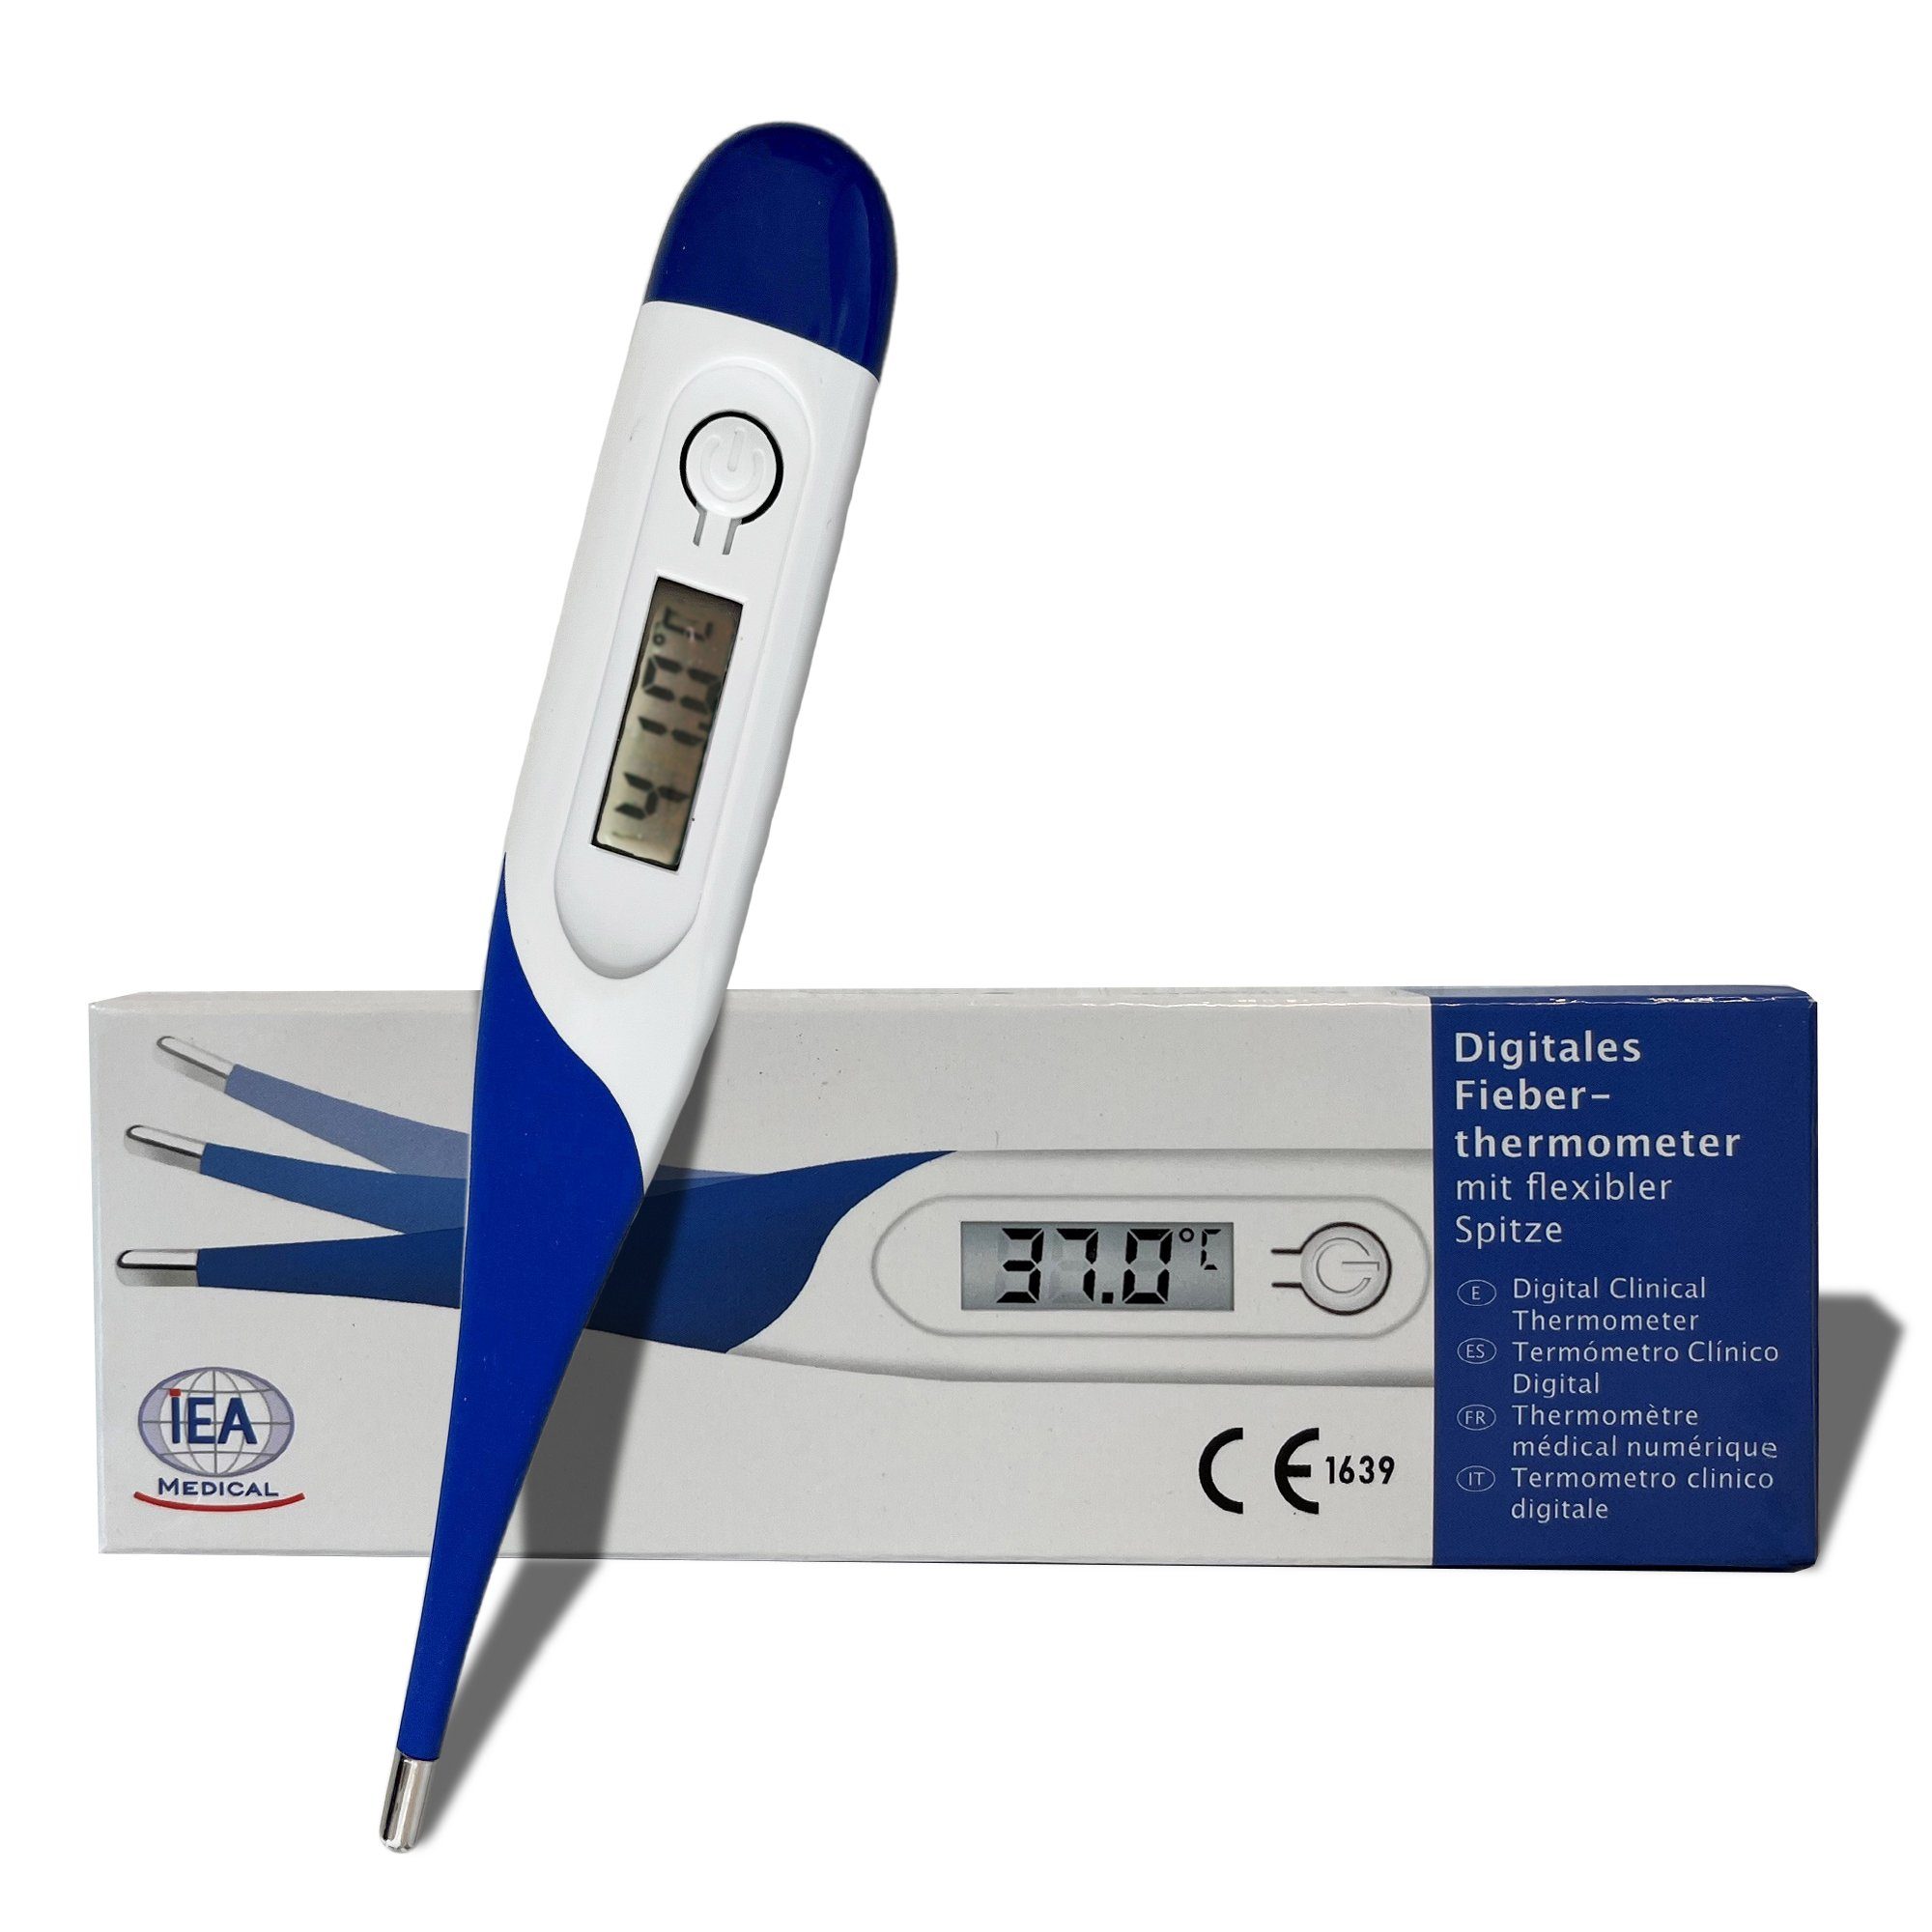 IEA Medical Fieberthermometer Digitales Fieberthermometer, & Spitze, Körperthermometer, Babys, Set, Für +/- Fieberalarm flexible Erwachsene, Messbereich Kinder Komplettset, mit 1 ºC